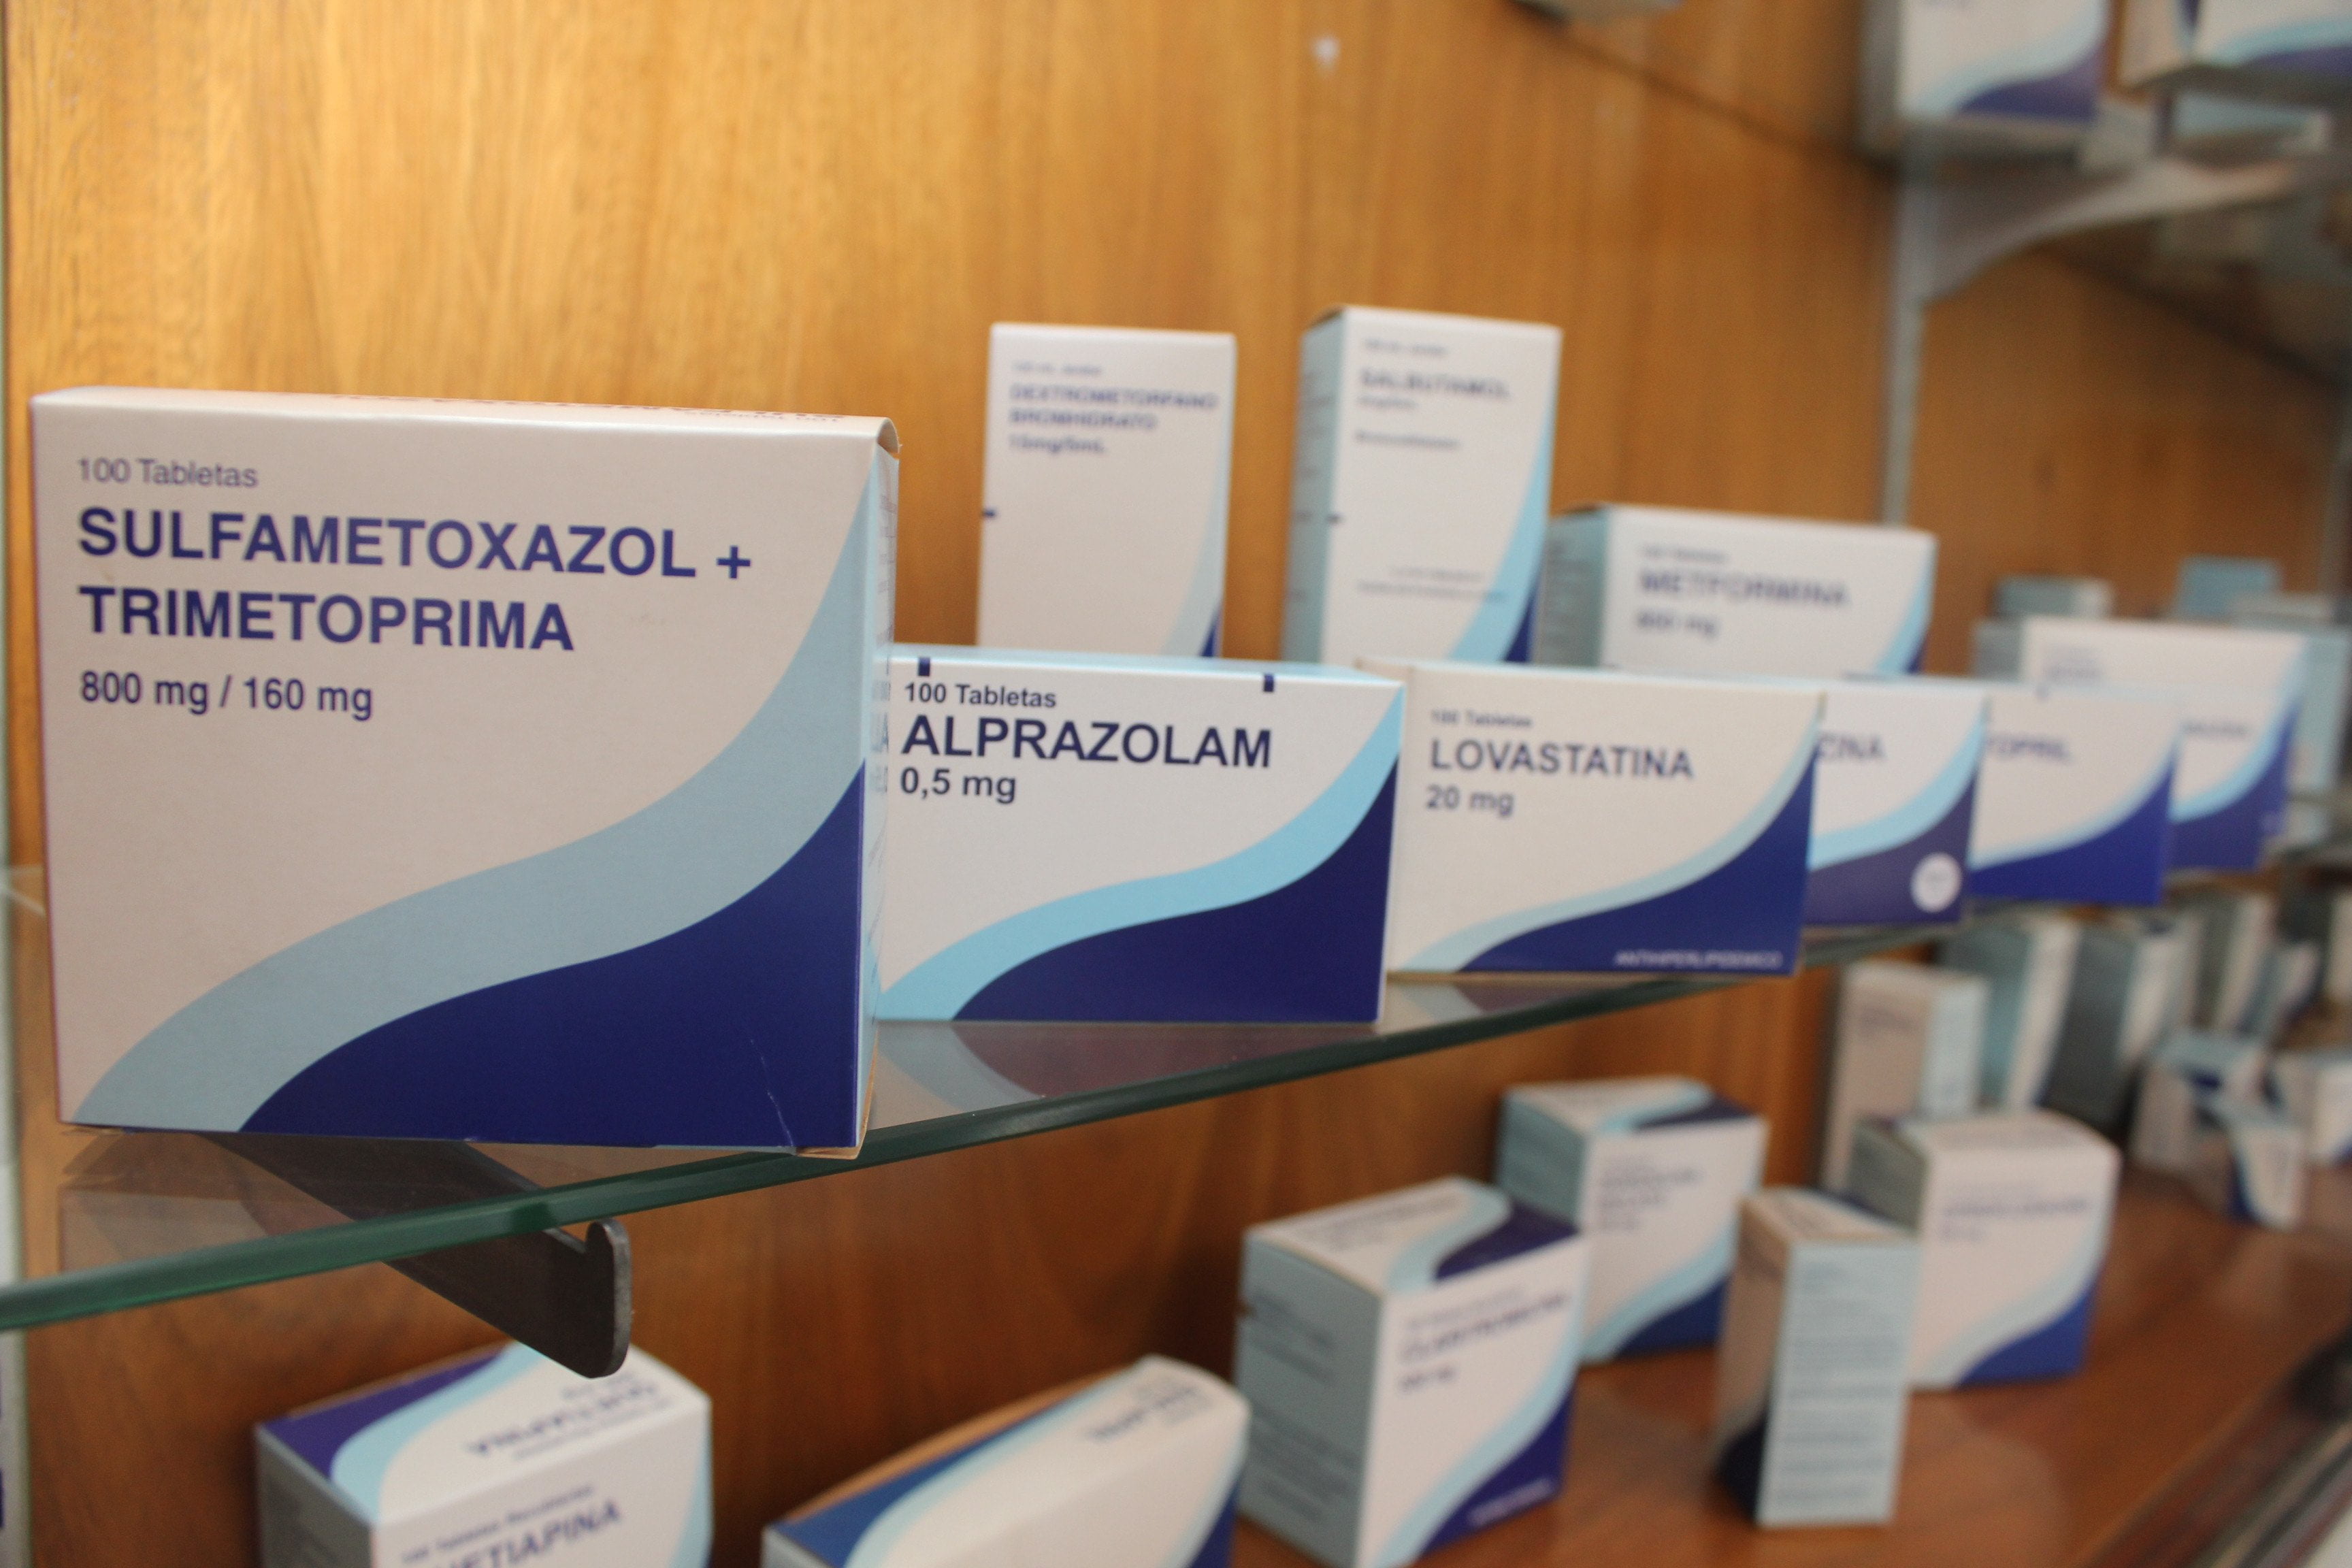 Adex: Exportaciones de productos farmacéuticos crecen